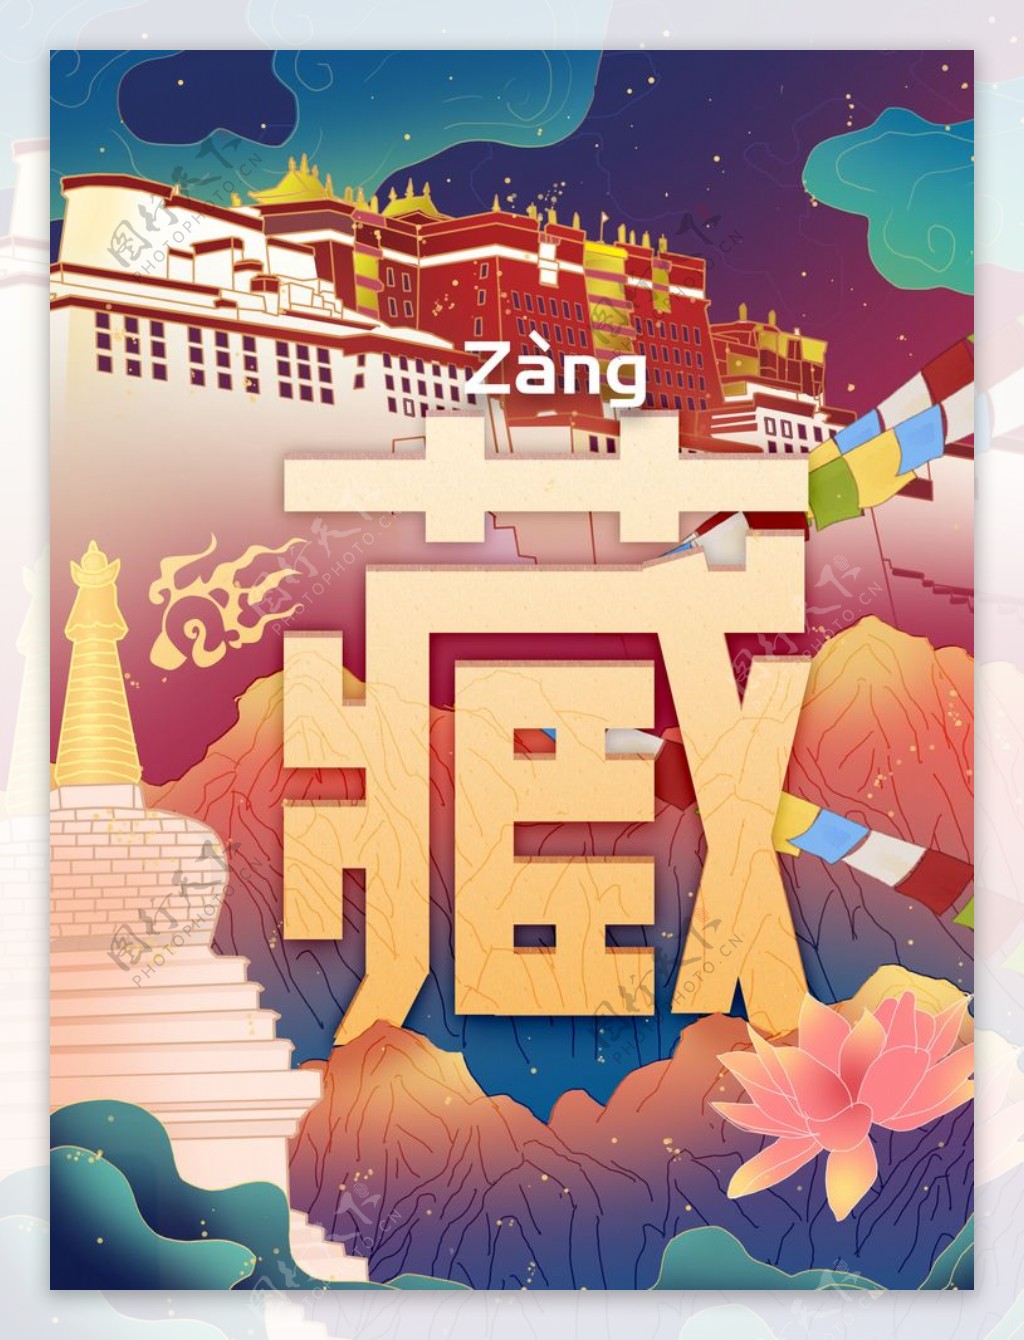 西藏风景插画